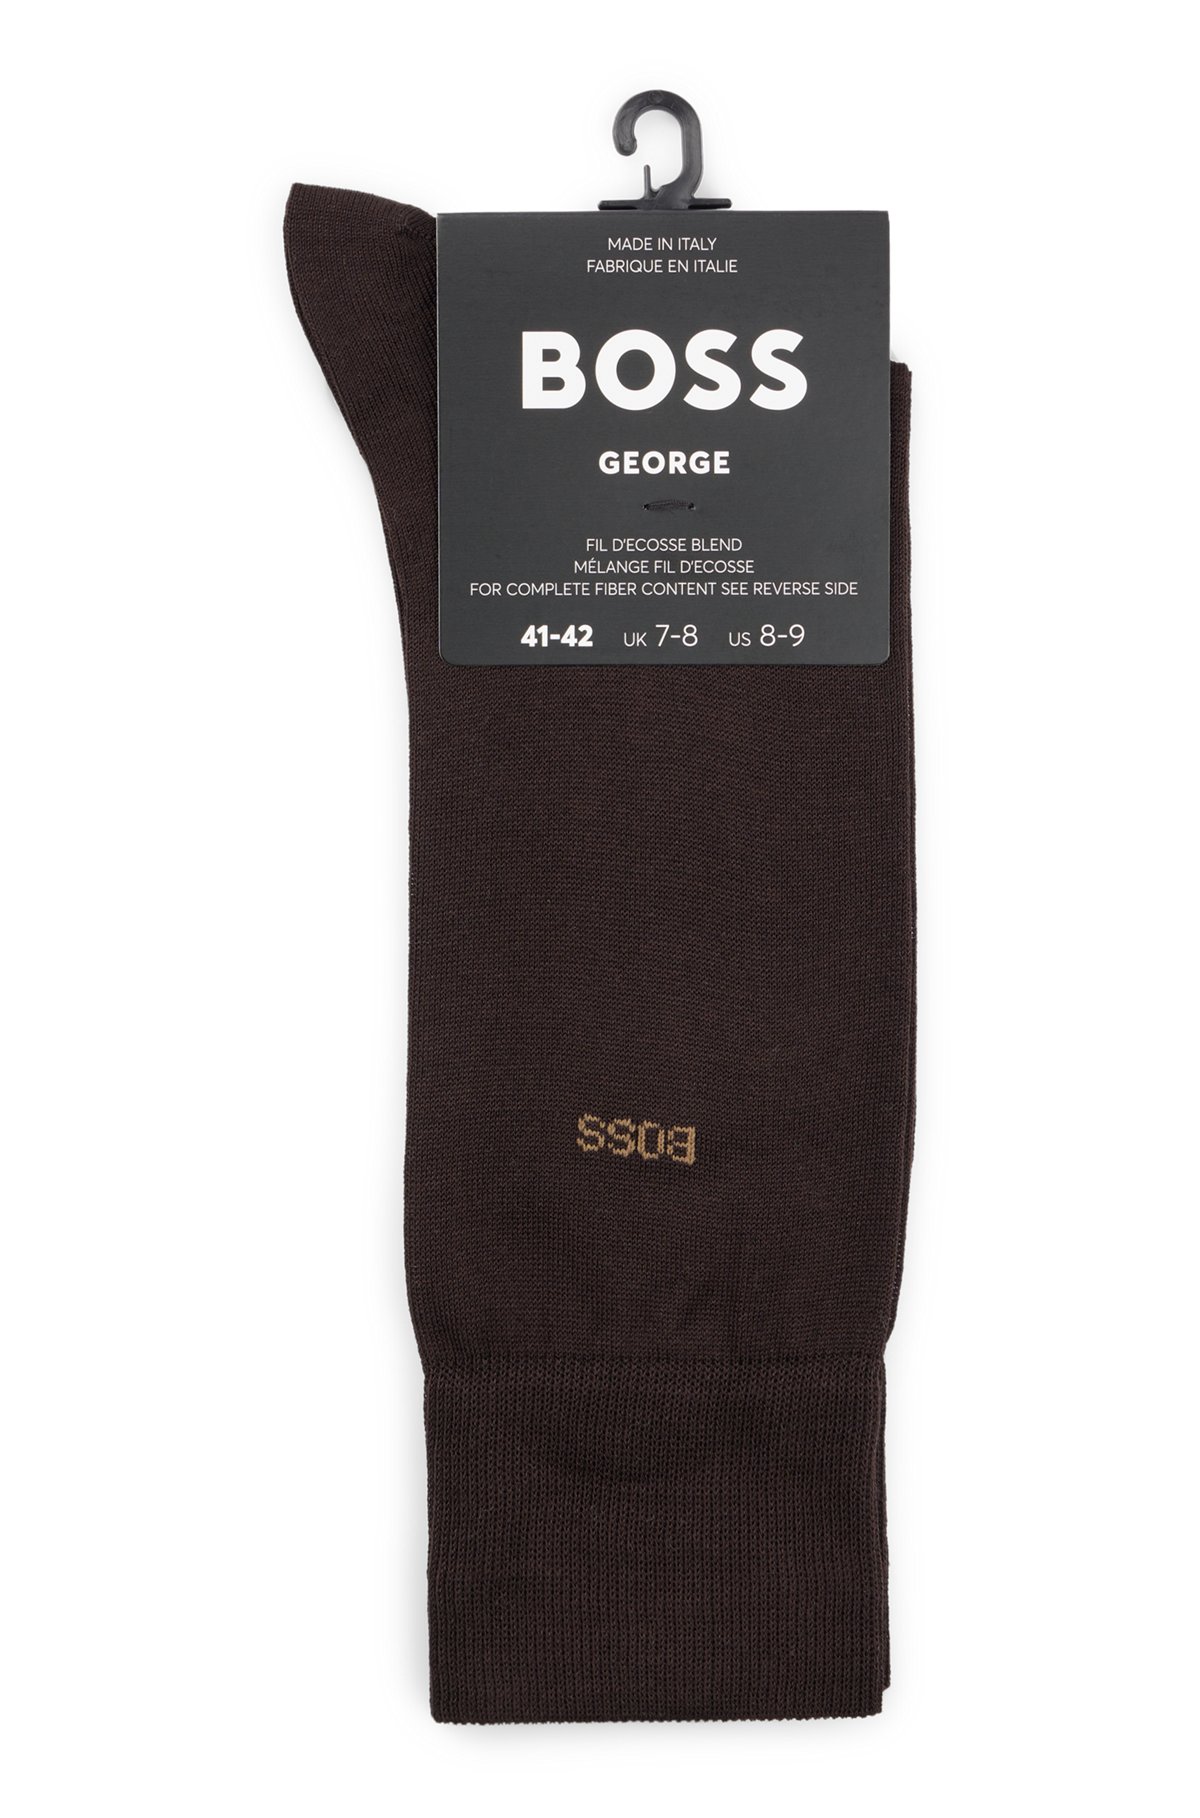 Regular-length logo socks in mercerised Egyptian cotton, Dark Brown